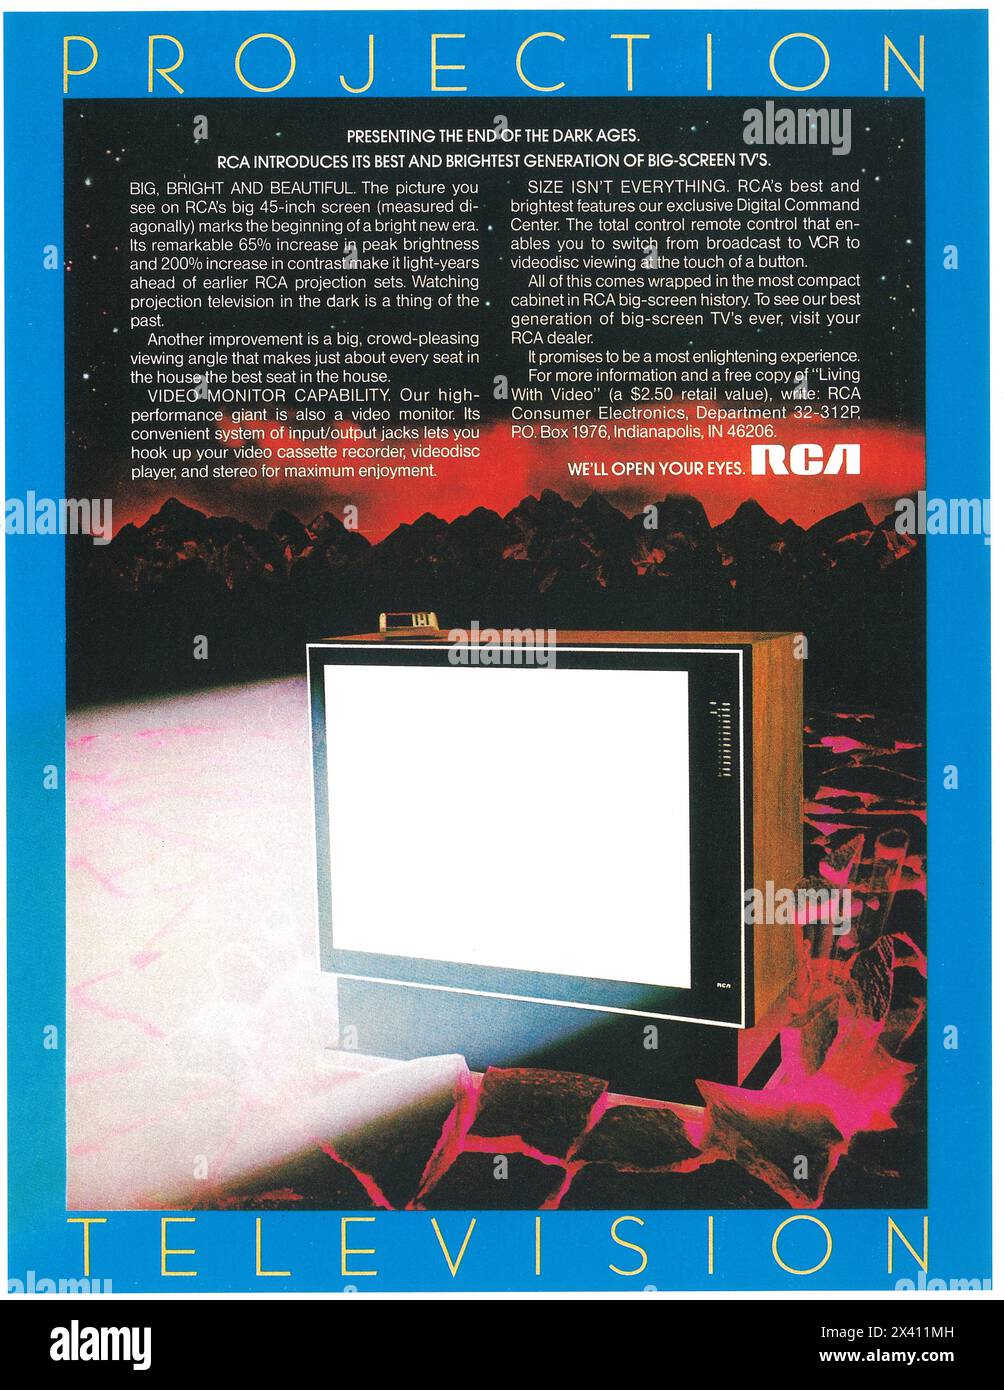 1983 RCA projection Television 45 pouces annonce - nous allons ouvrir vos yeux. Banque D'Images